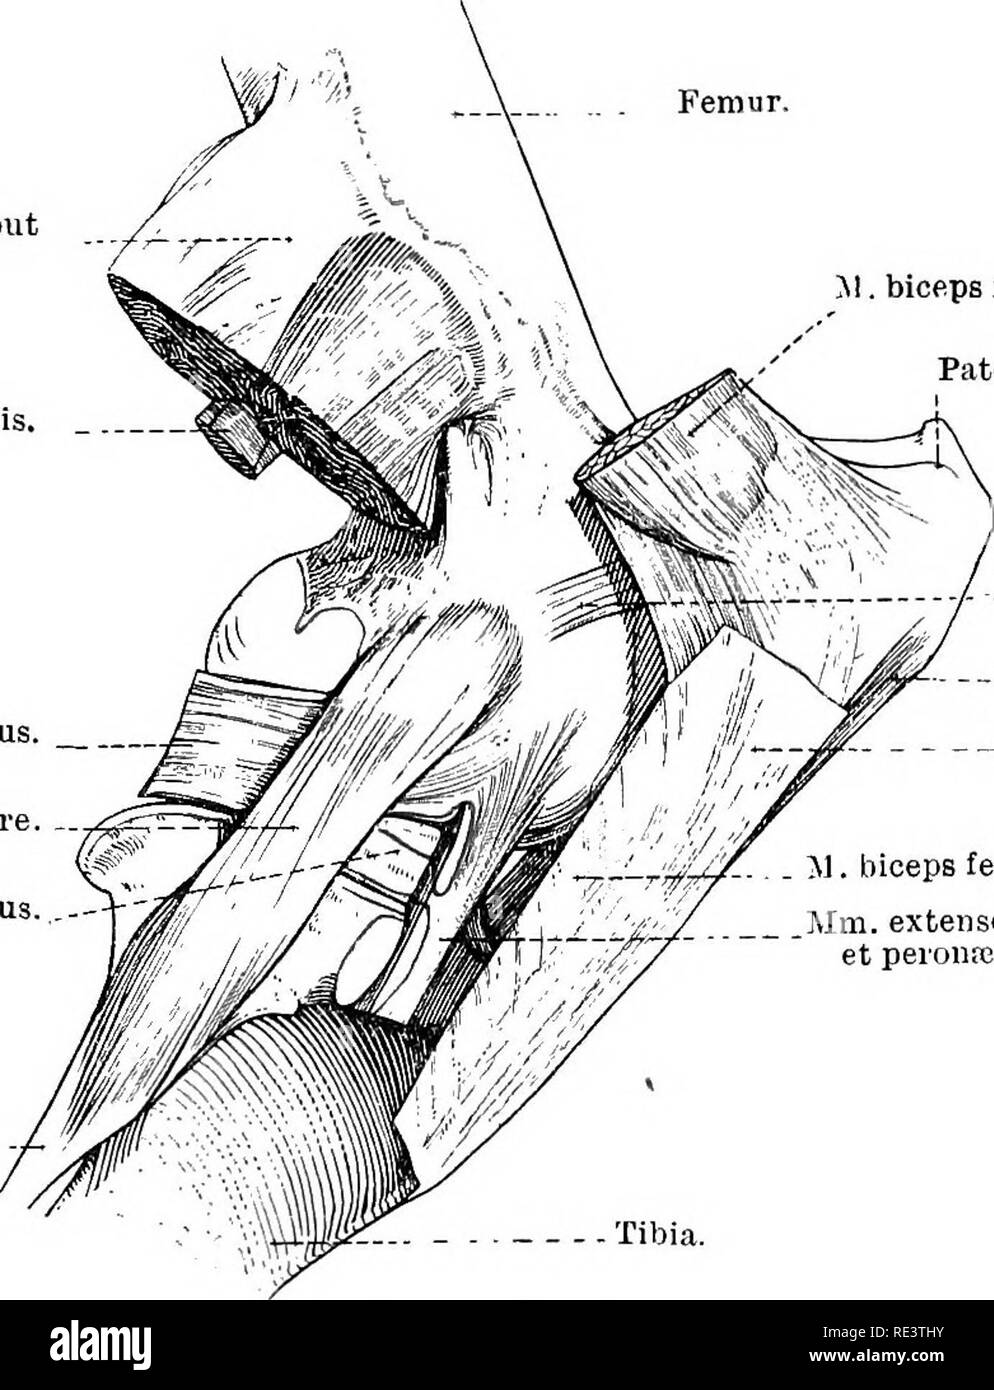 . La Anatomia Topografica degli arti del cavallo. Cavalli; fisiologia. Gli arti del HOKSE 155 Tre, leggermente convergenti, patellare legamenti (ligamenta rotule) corrispondono ai singoli il legamento dell uomo e il cane. Il laterale e medio legamenti la molla dal laterale e distale rispettivamente gli angoli della rotula. Il legamento mediale è collegato con il rotuleo cartilagine supplementare. L'attacco distale di ciascuna banda è la tuberosità della tibia, il legamento centrale essendo fissato alla parte distale della scanalatura-come la depressione della tuberosità. Til legamento laterale Foto Stock